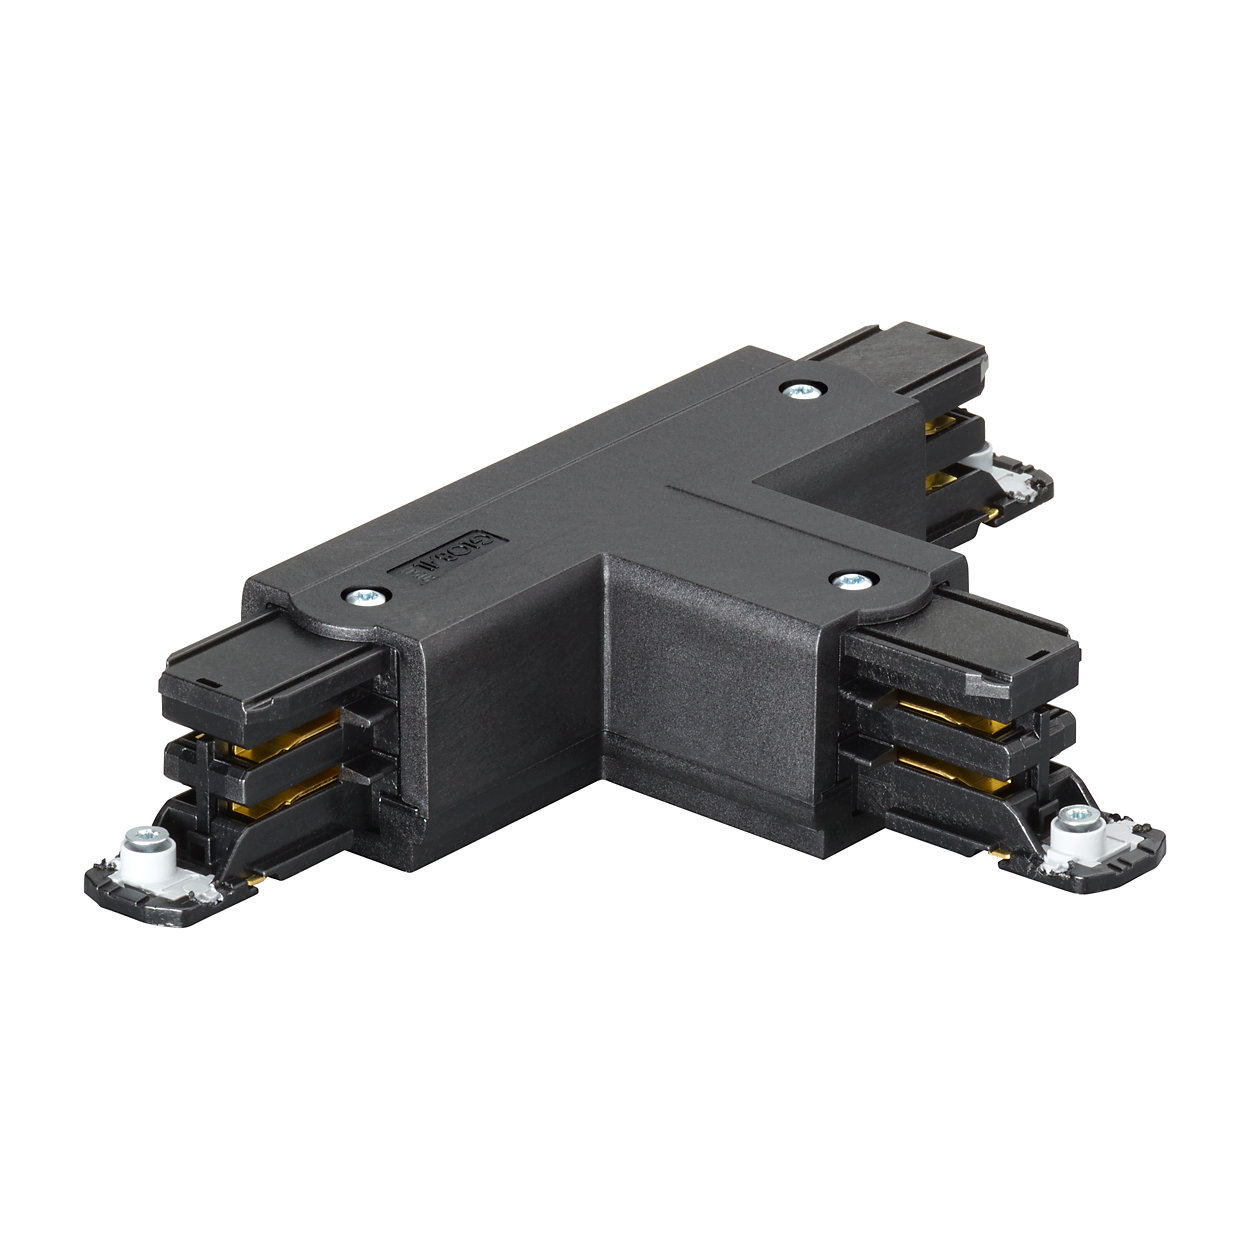 Sistema de carril cuadrado de 3 circuitos RCS750: flexible y multifuncional